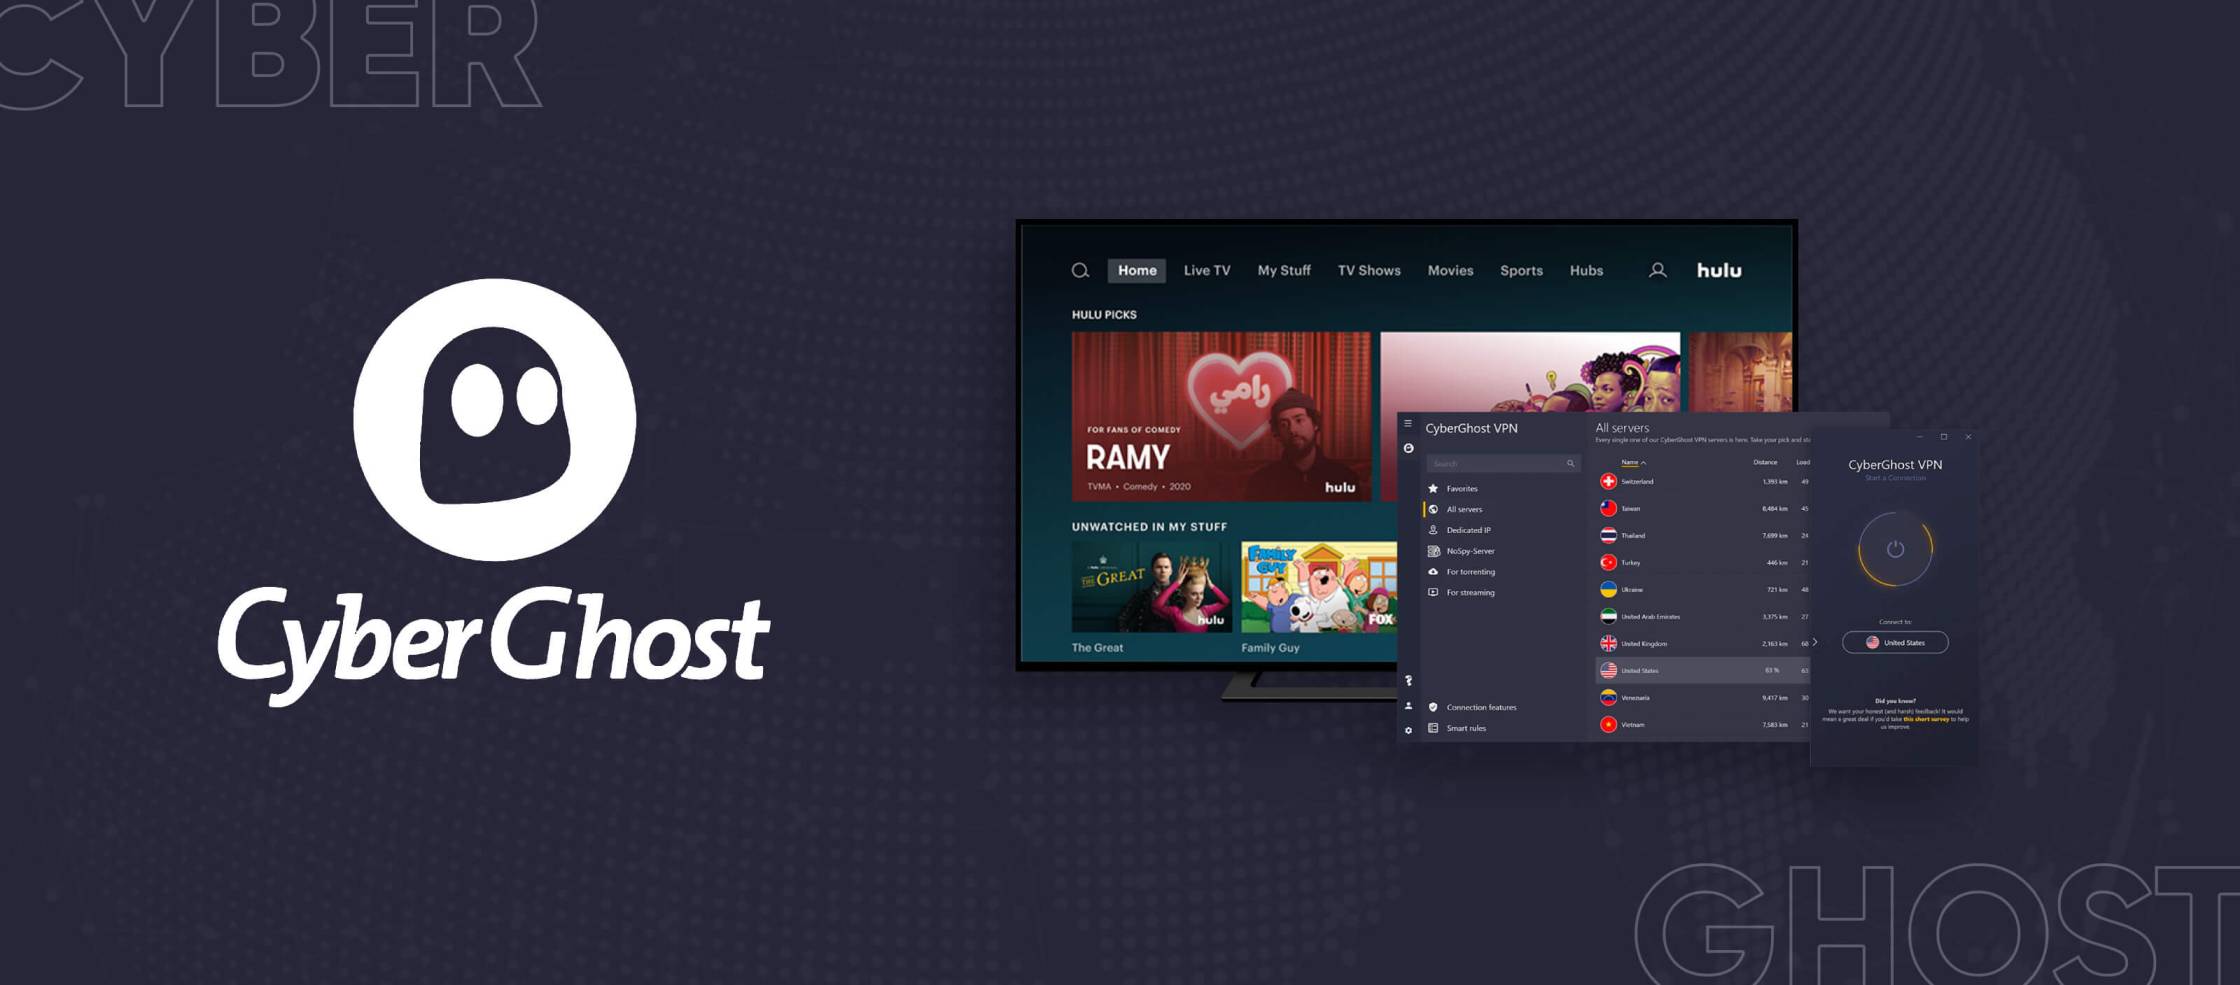  CyberGhost-Hulu es una combinación de dos servicios en línea populares: CyberGhost, un proveedor de servicios de red privada virtual (VPN) y Hulu, un servicio de streaming de contenido de televisión y películas. Juntos, CyberGhost-Hulu ofrece a los usuarios una forma segura y privada de acceder al contenido de Hulu desde cualquier lugar del mundo. Con CyberGhost-Hulu, los usuarios pueden disfrutar de una amplia selección de programas de 